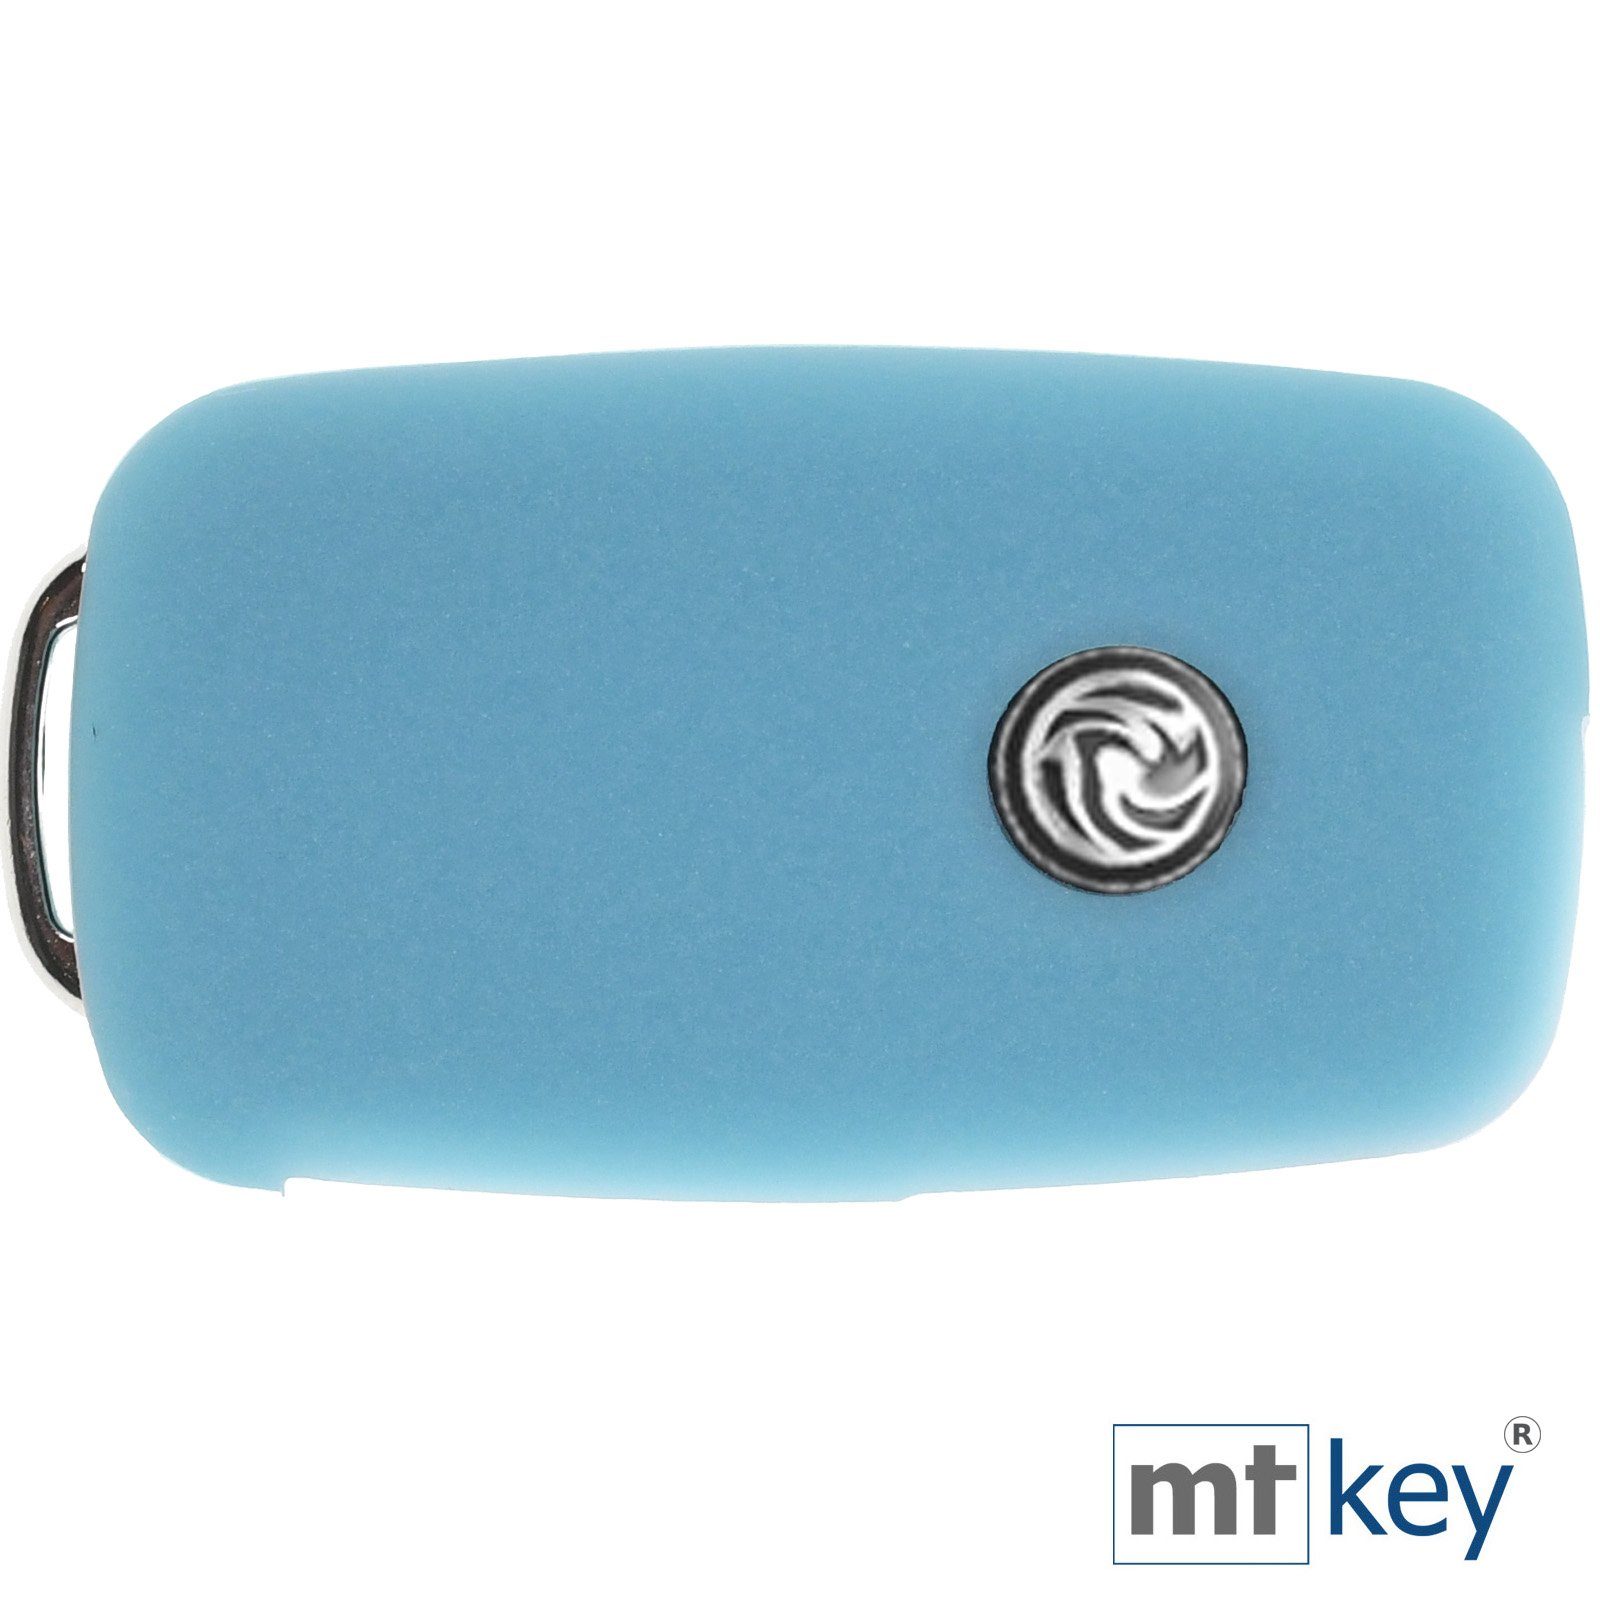 Silikon mt-key Design Seat Fluoreszierend Caddy Schlüssel Schlüsselband, Schlüsseltasche Wabe Tasten Sharan T5 4 Schutzhülle Autoschlüssel VW Alhambra Multivan Glowblue Blau für T6 +